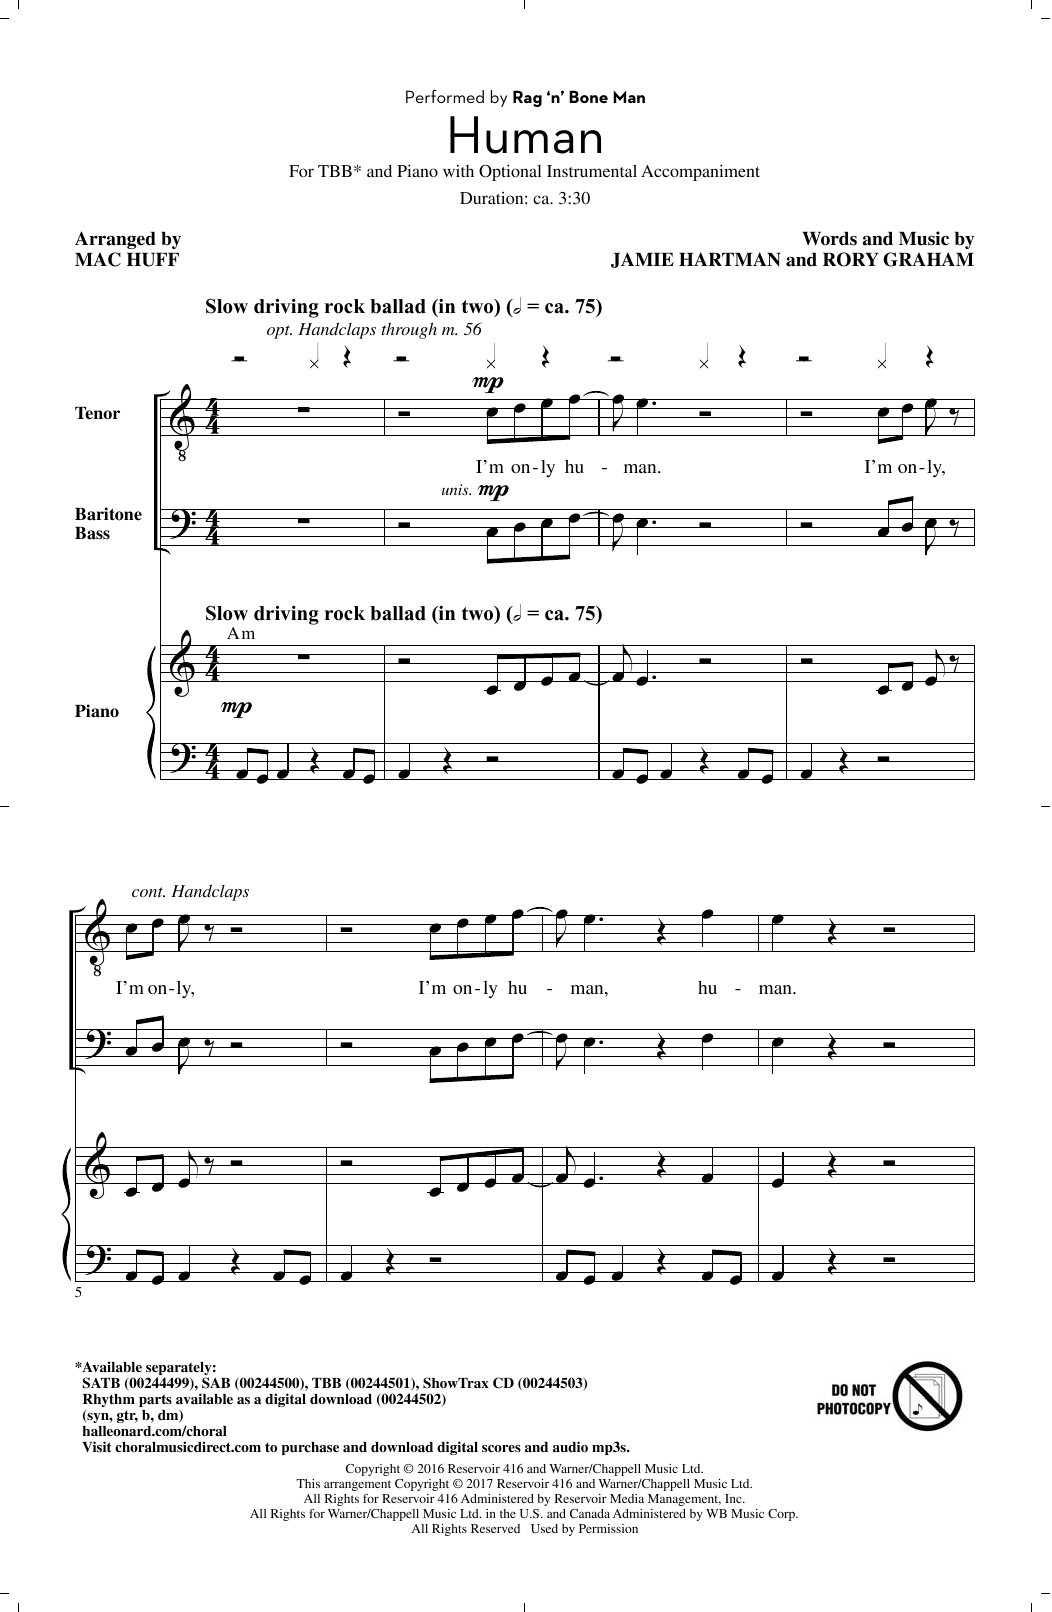 Rag'n'Bone Man Human (arr. Mac Huff) sheet music notes and chords arranged for SATB Choir